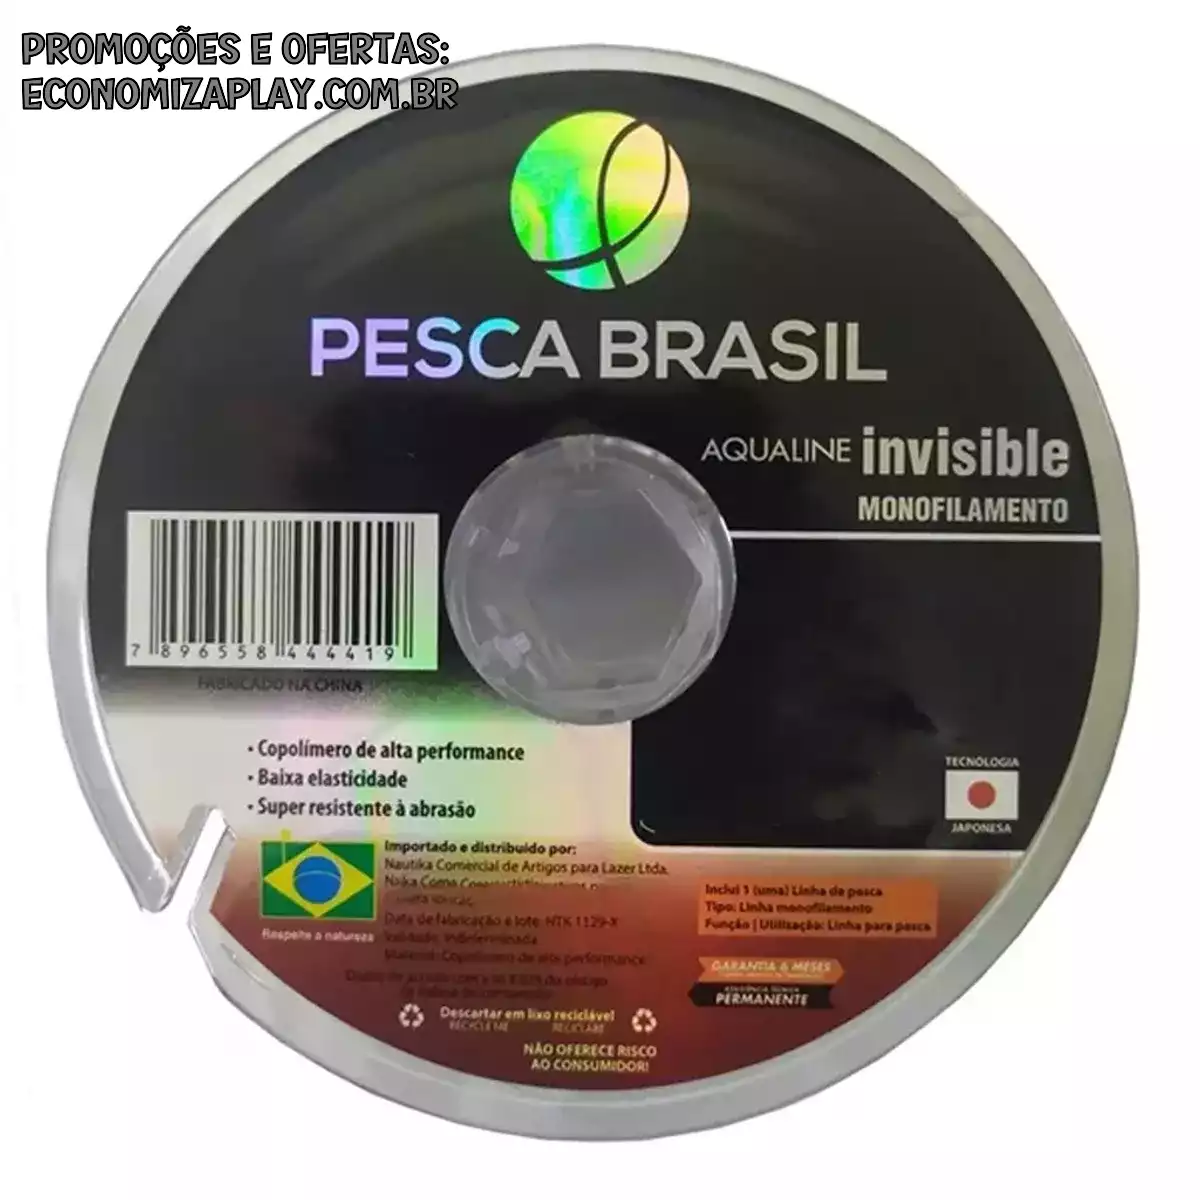 Linha Monofilamento Aqualine Invisivel 037 mm 100mts Pesca Brasil